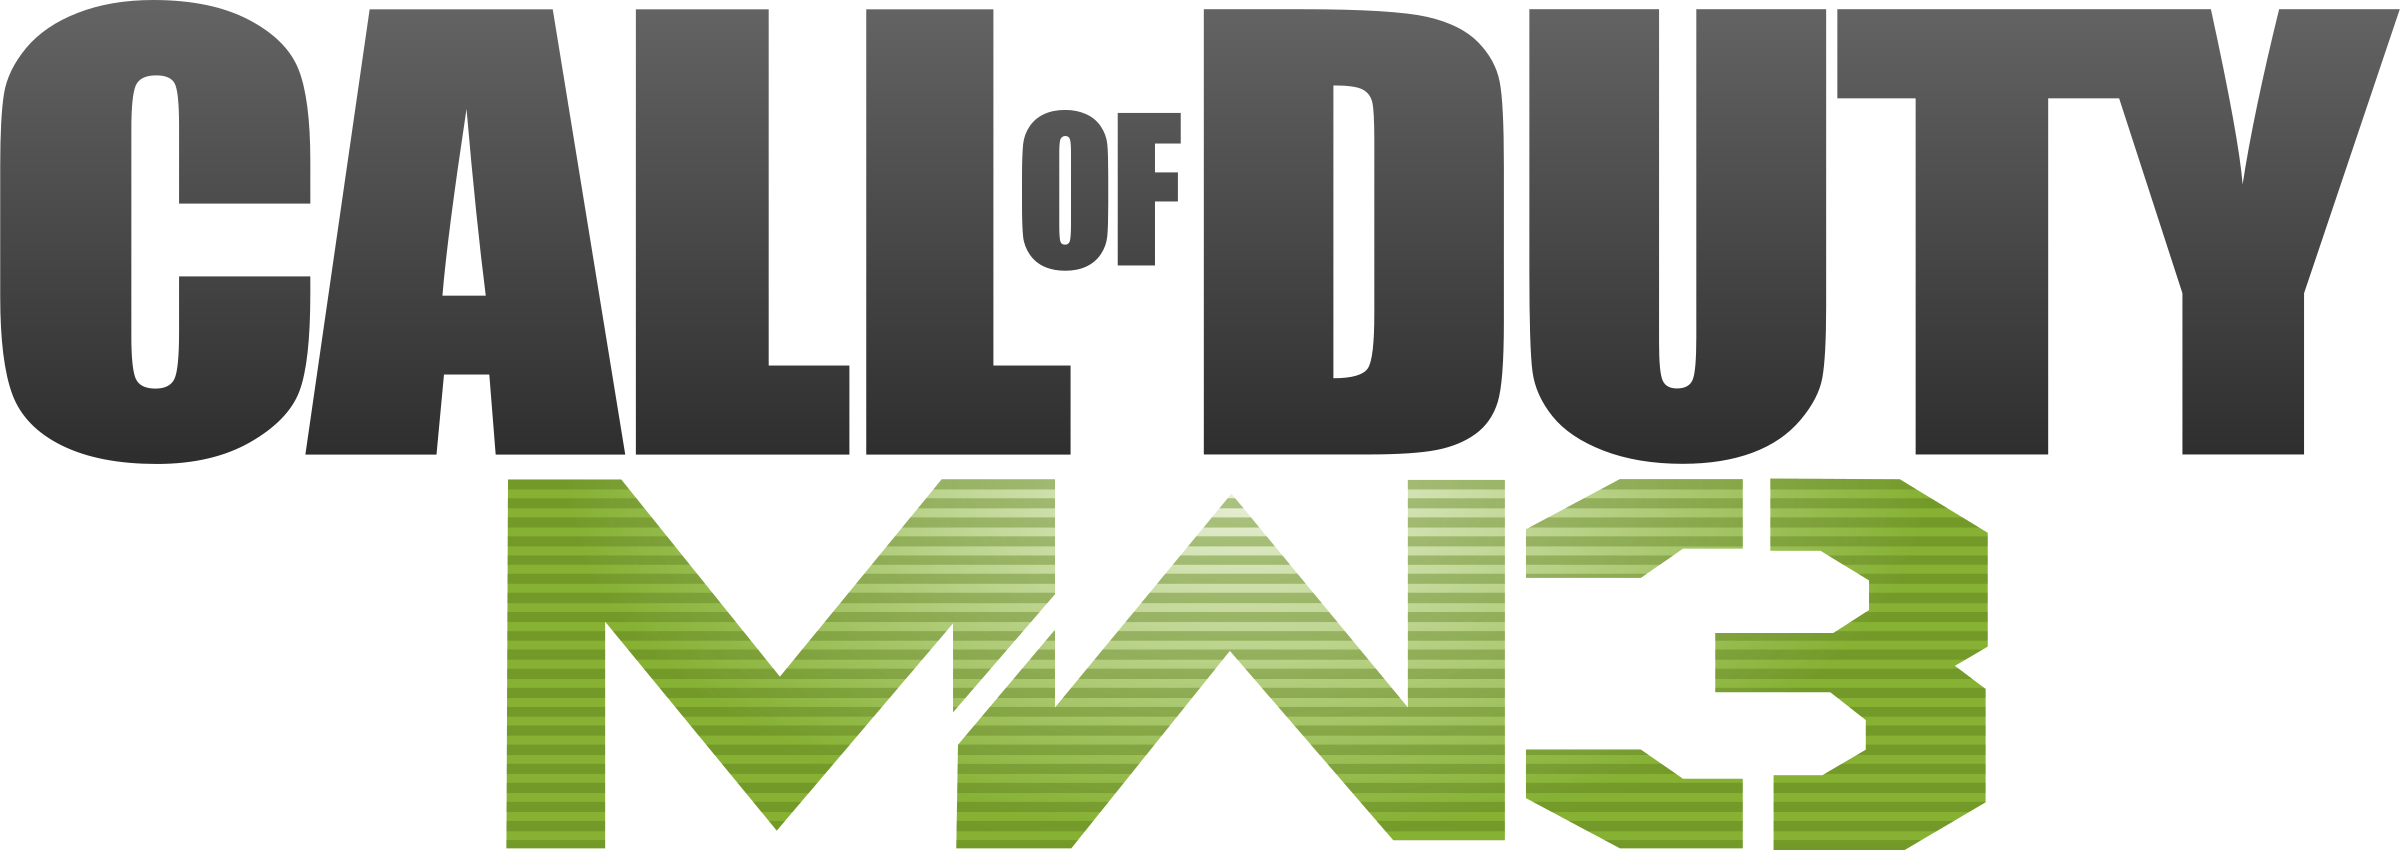 Call of Duty Modern Warfare Logosu Png Clipart